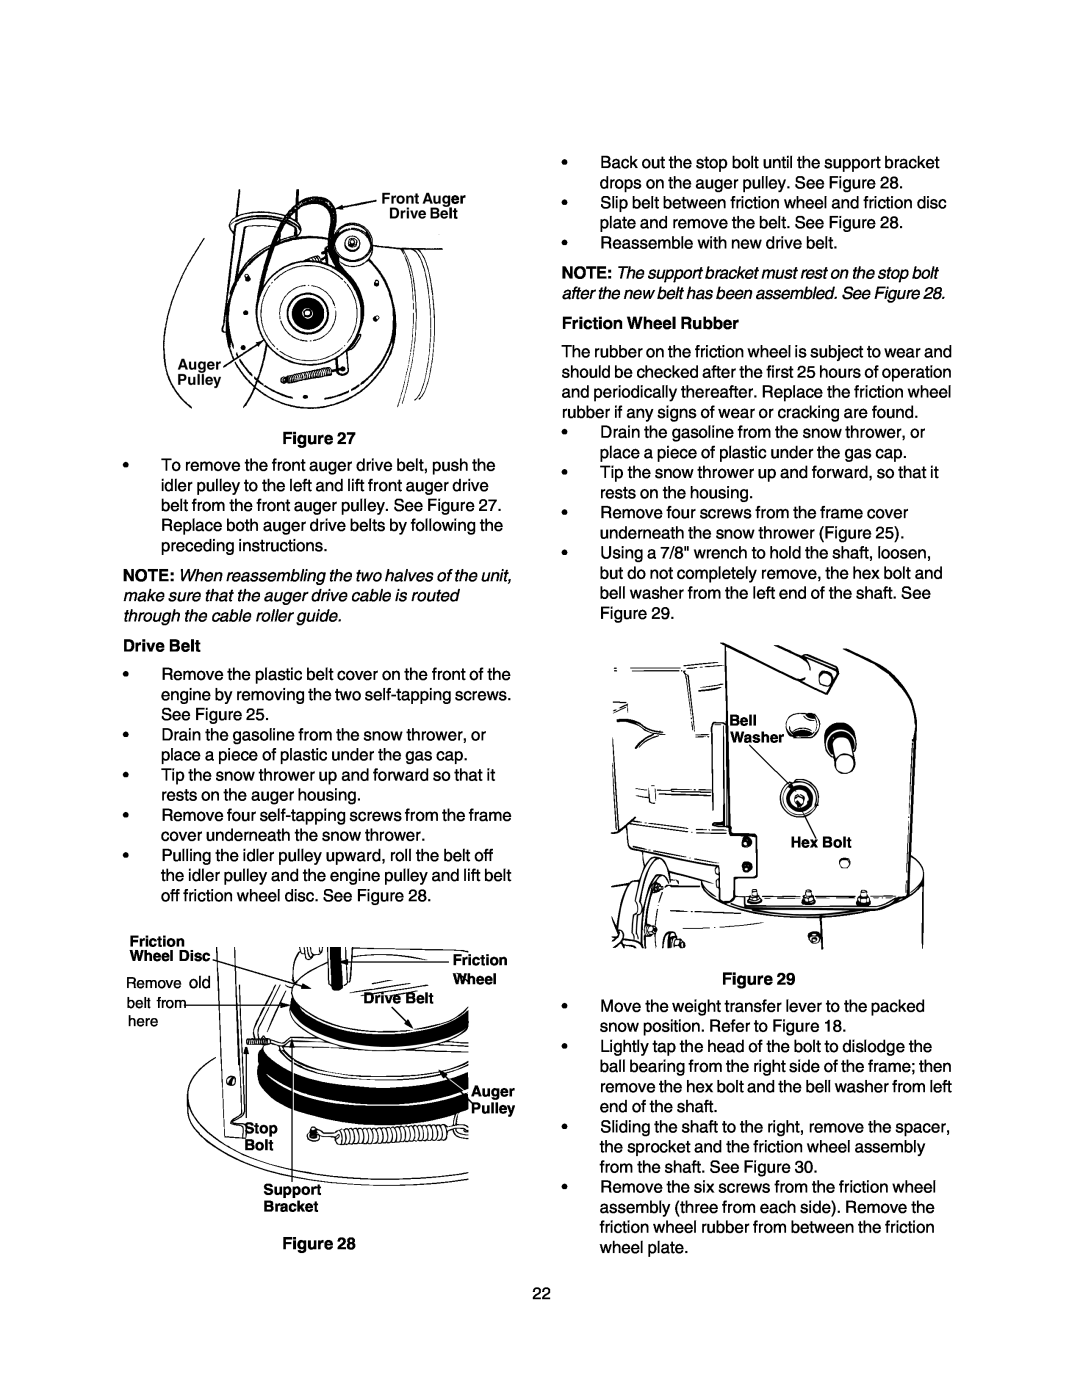 Craftsman 247.88855 owner manual Drive Belt, Friction Wheel Rubber 